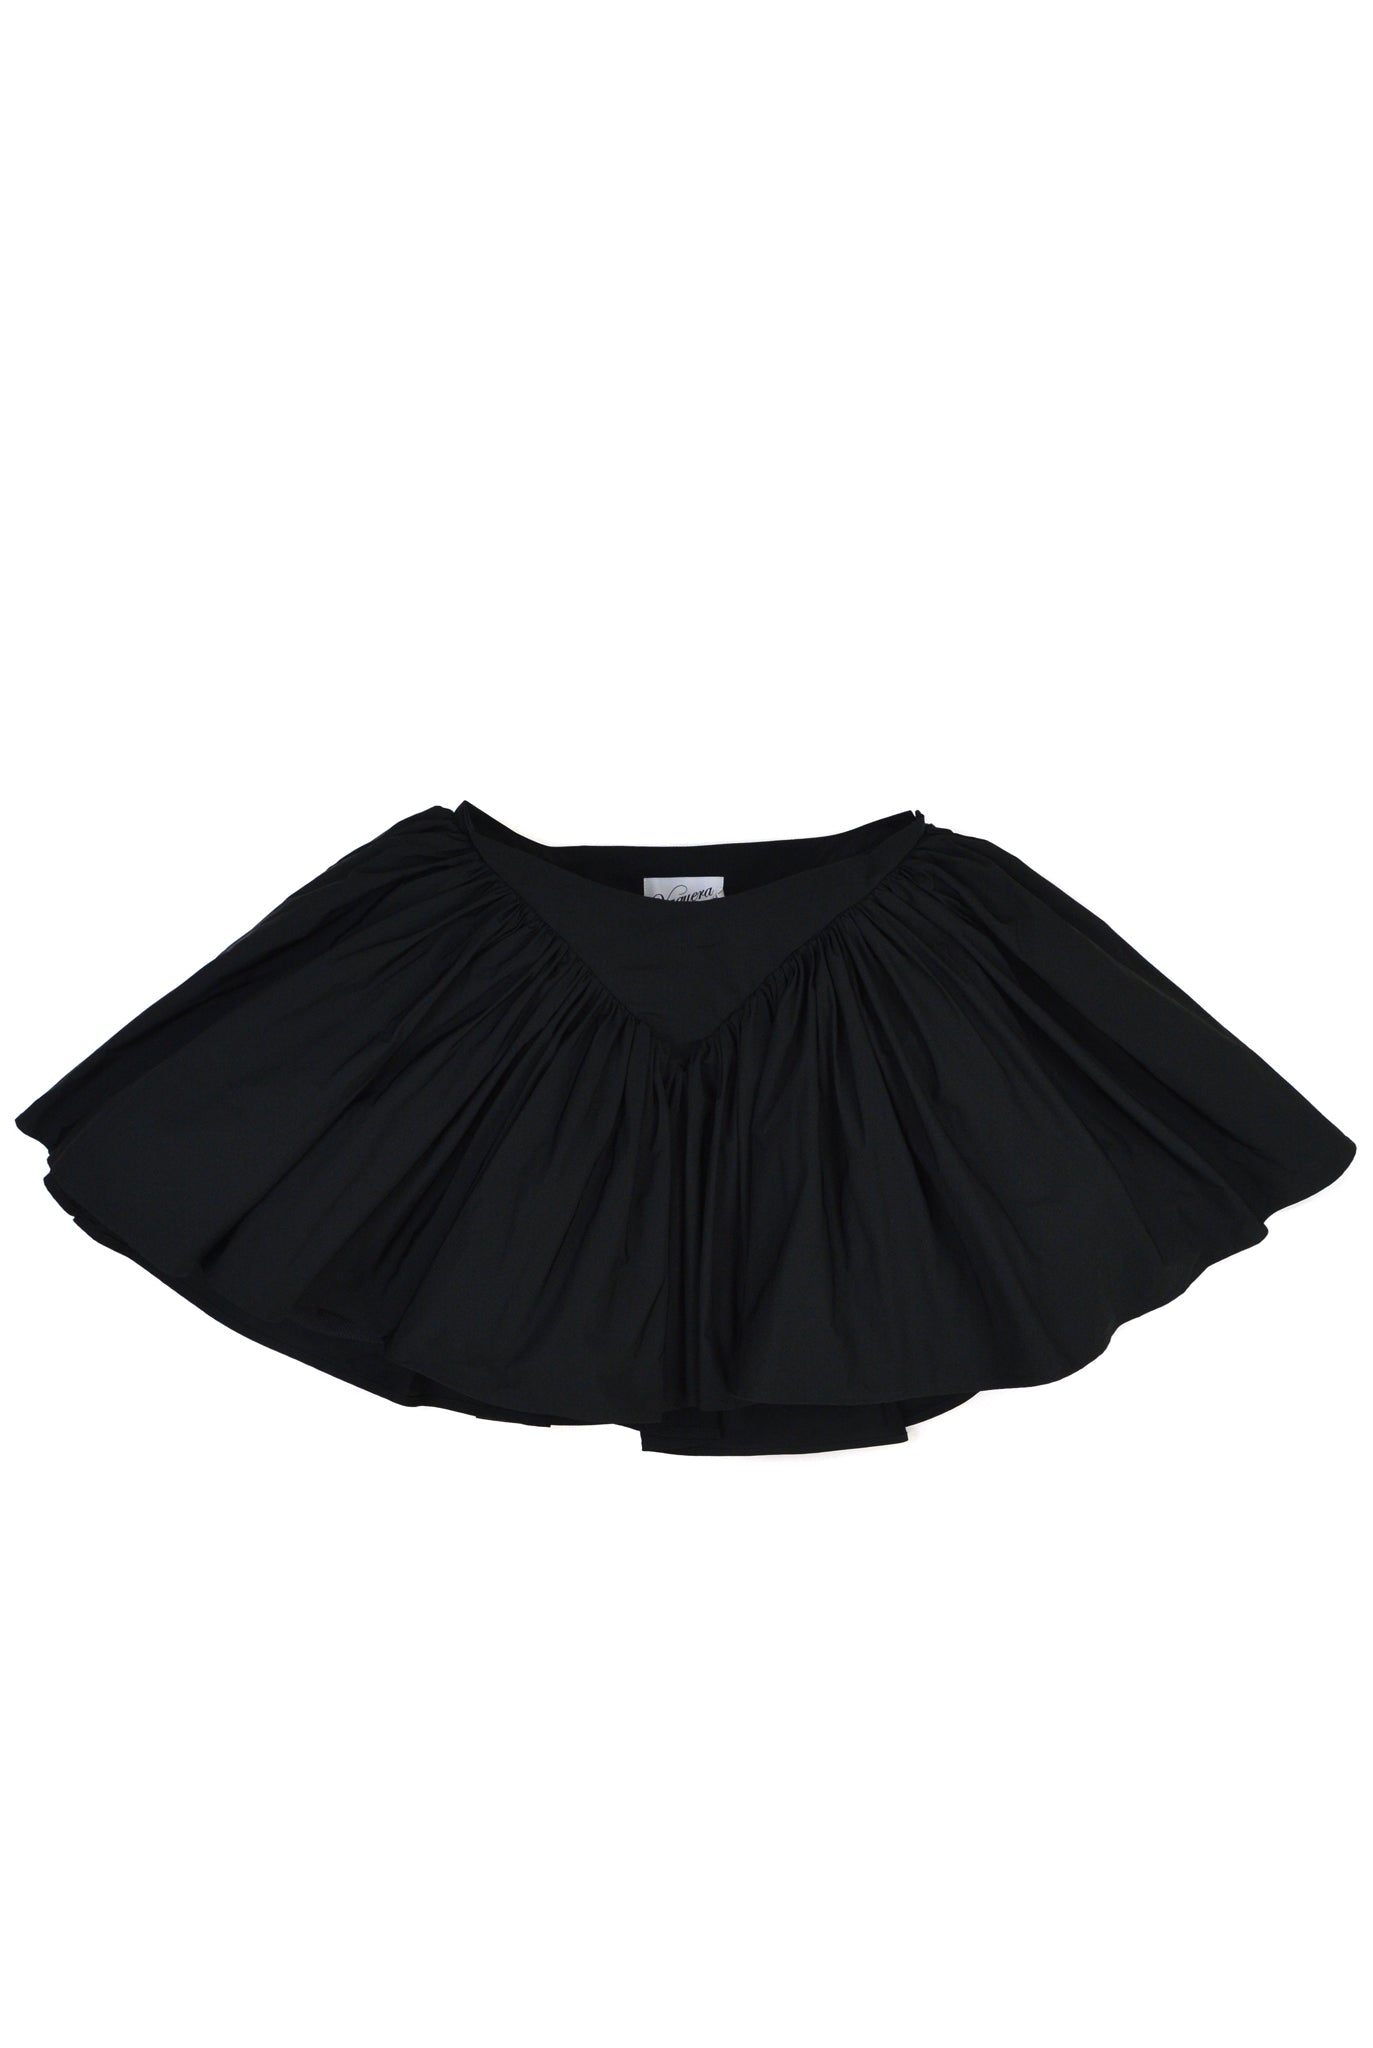 Vaquera Underwear Skirt, Black